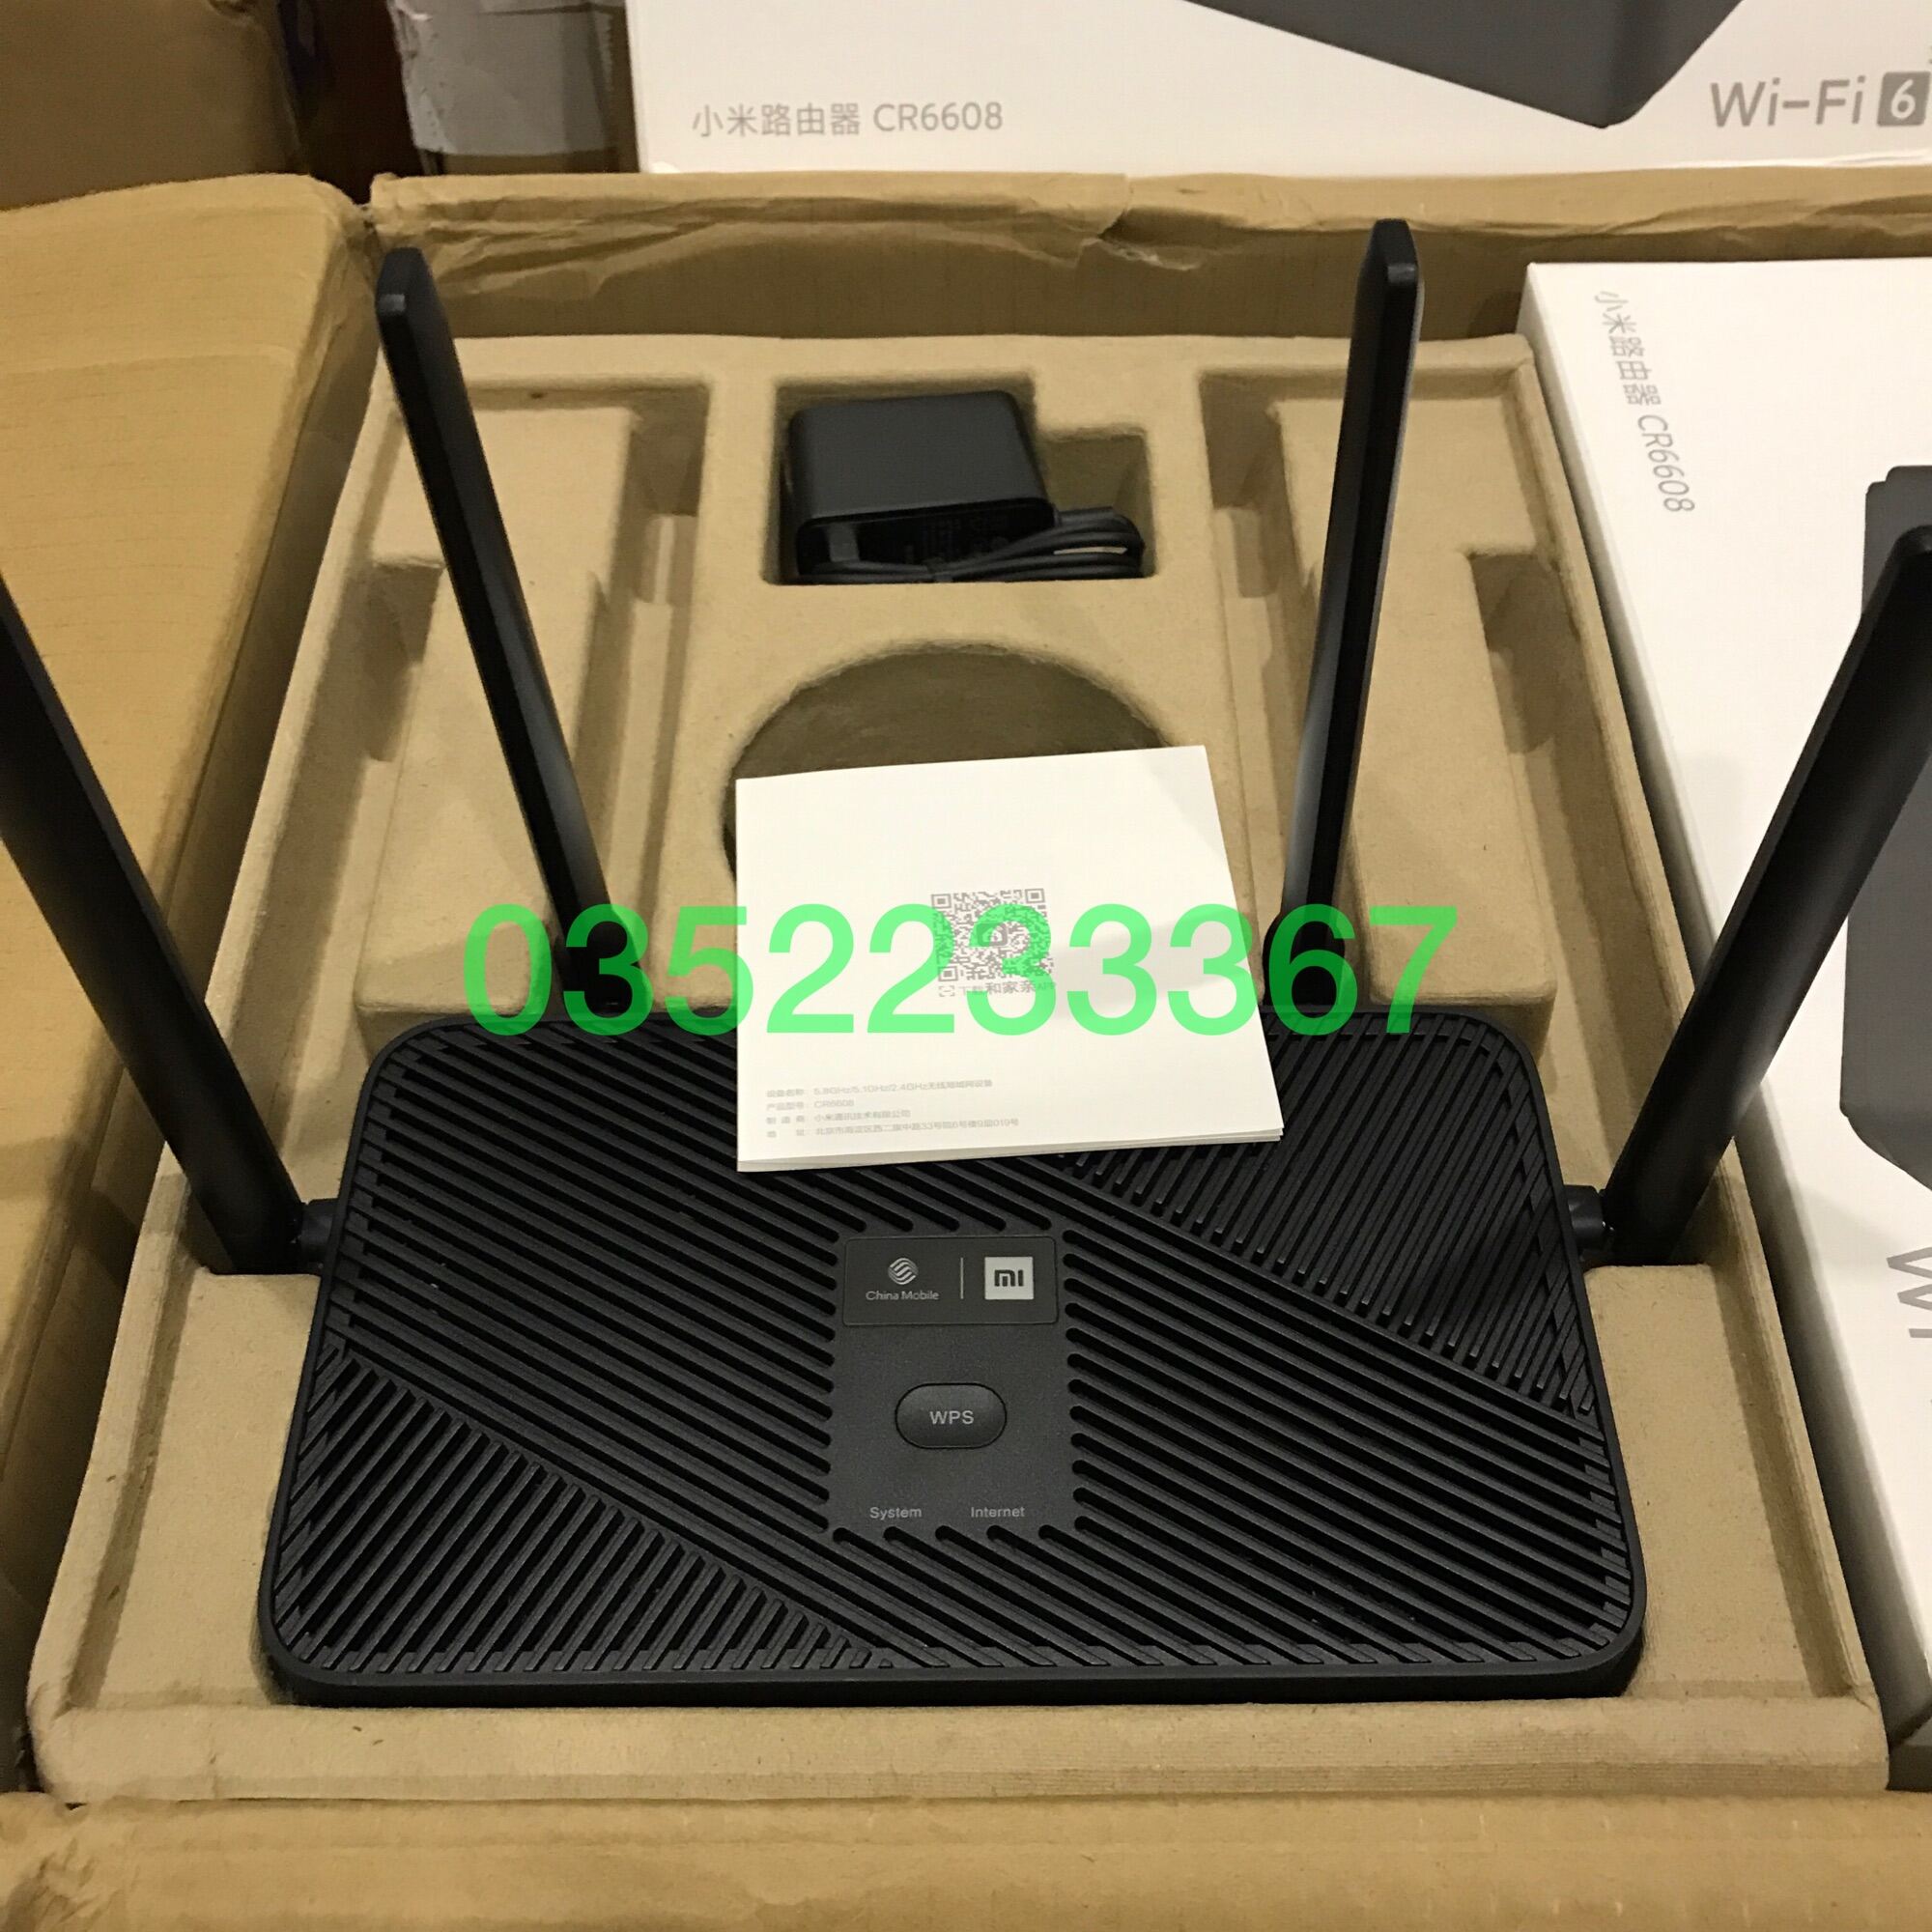 Bảng giá Bộ phát wifi Xiaomi CR6608 Chuẩn Wifi 6, AX1800 Mesh, Lan Gigabit, 4 anten Phong Vũ